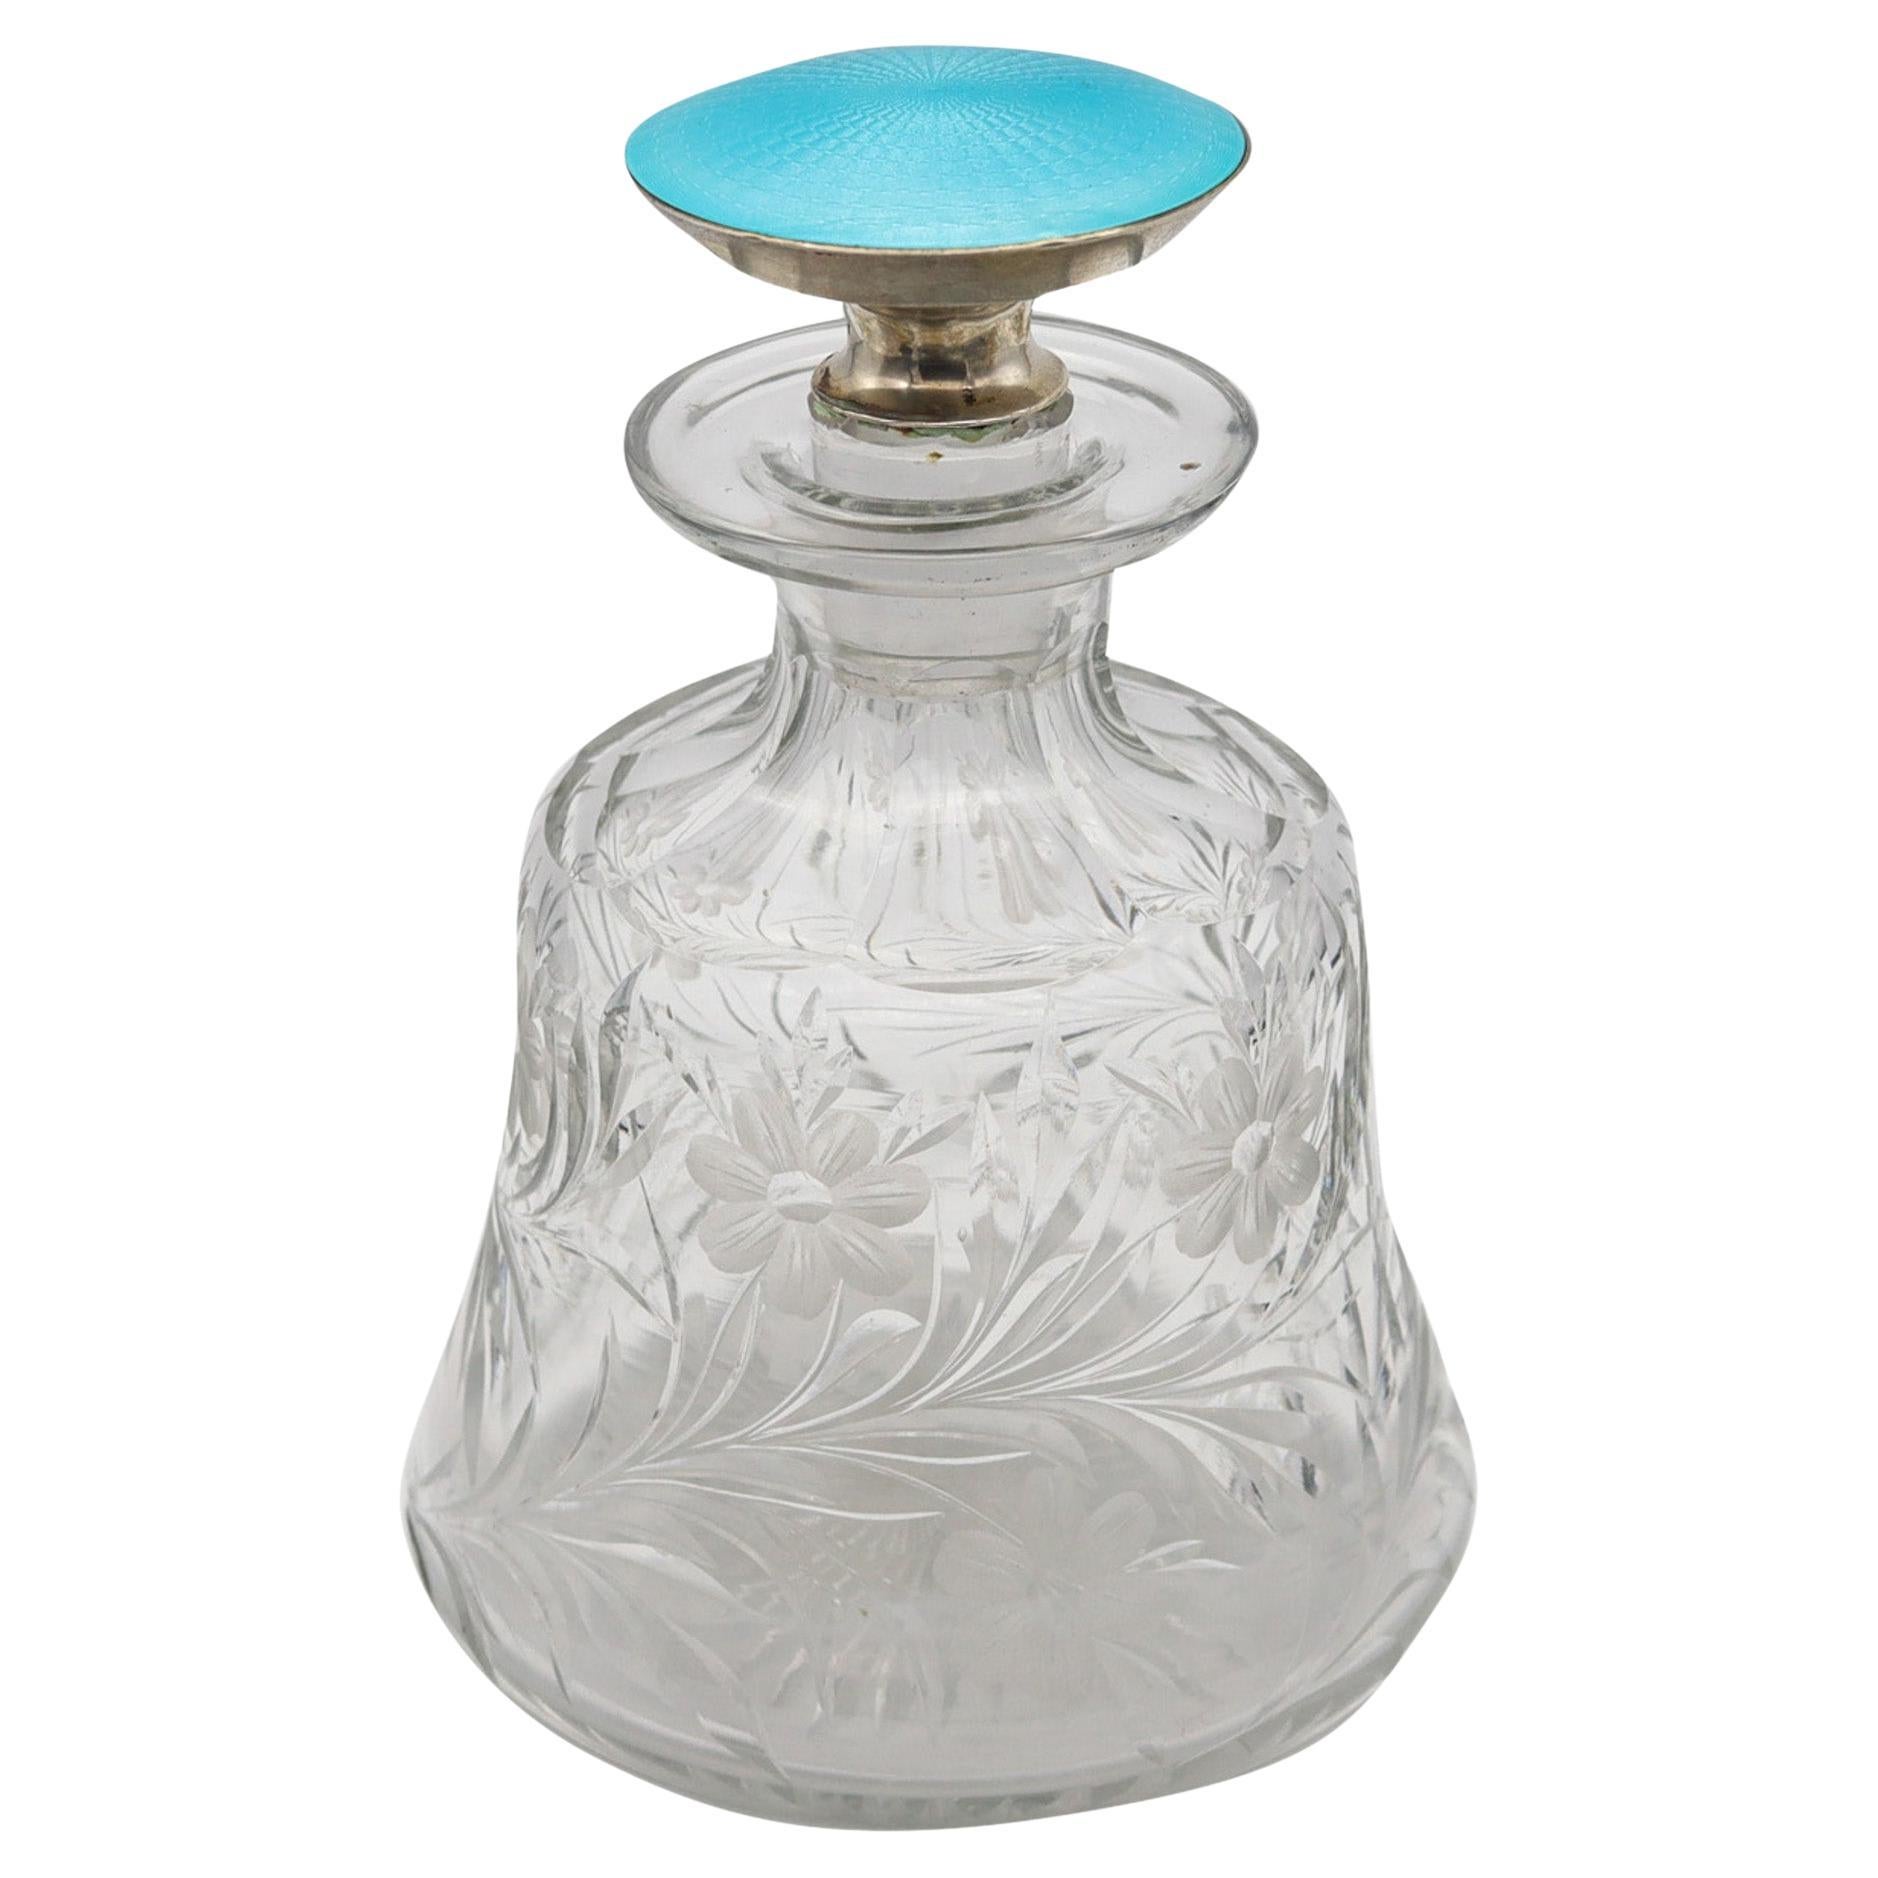 Edwardian 1905 Guilloché Enamel Perfume Bottle In .925 Sterling And Cut Glass For Sale